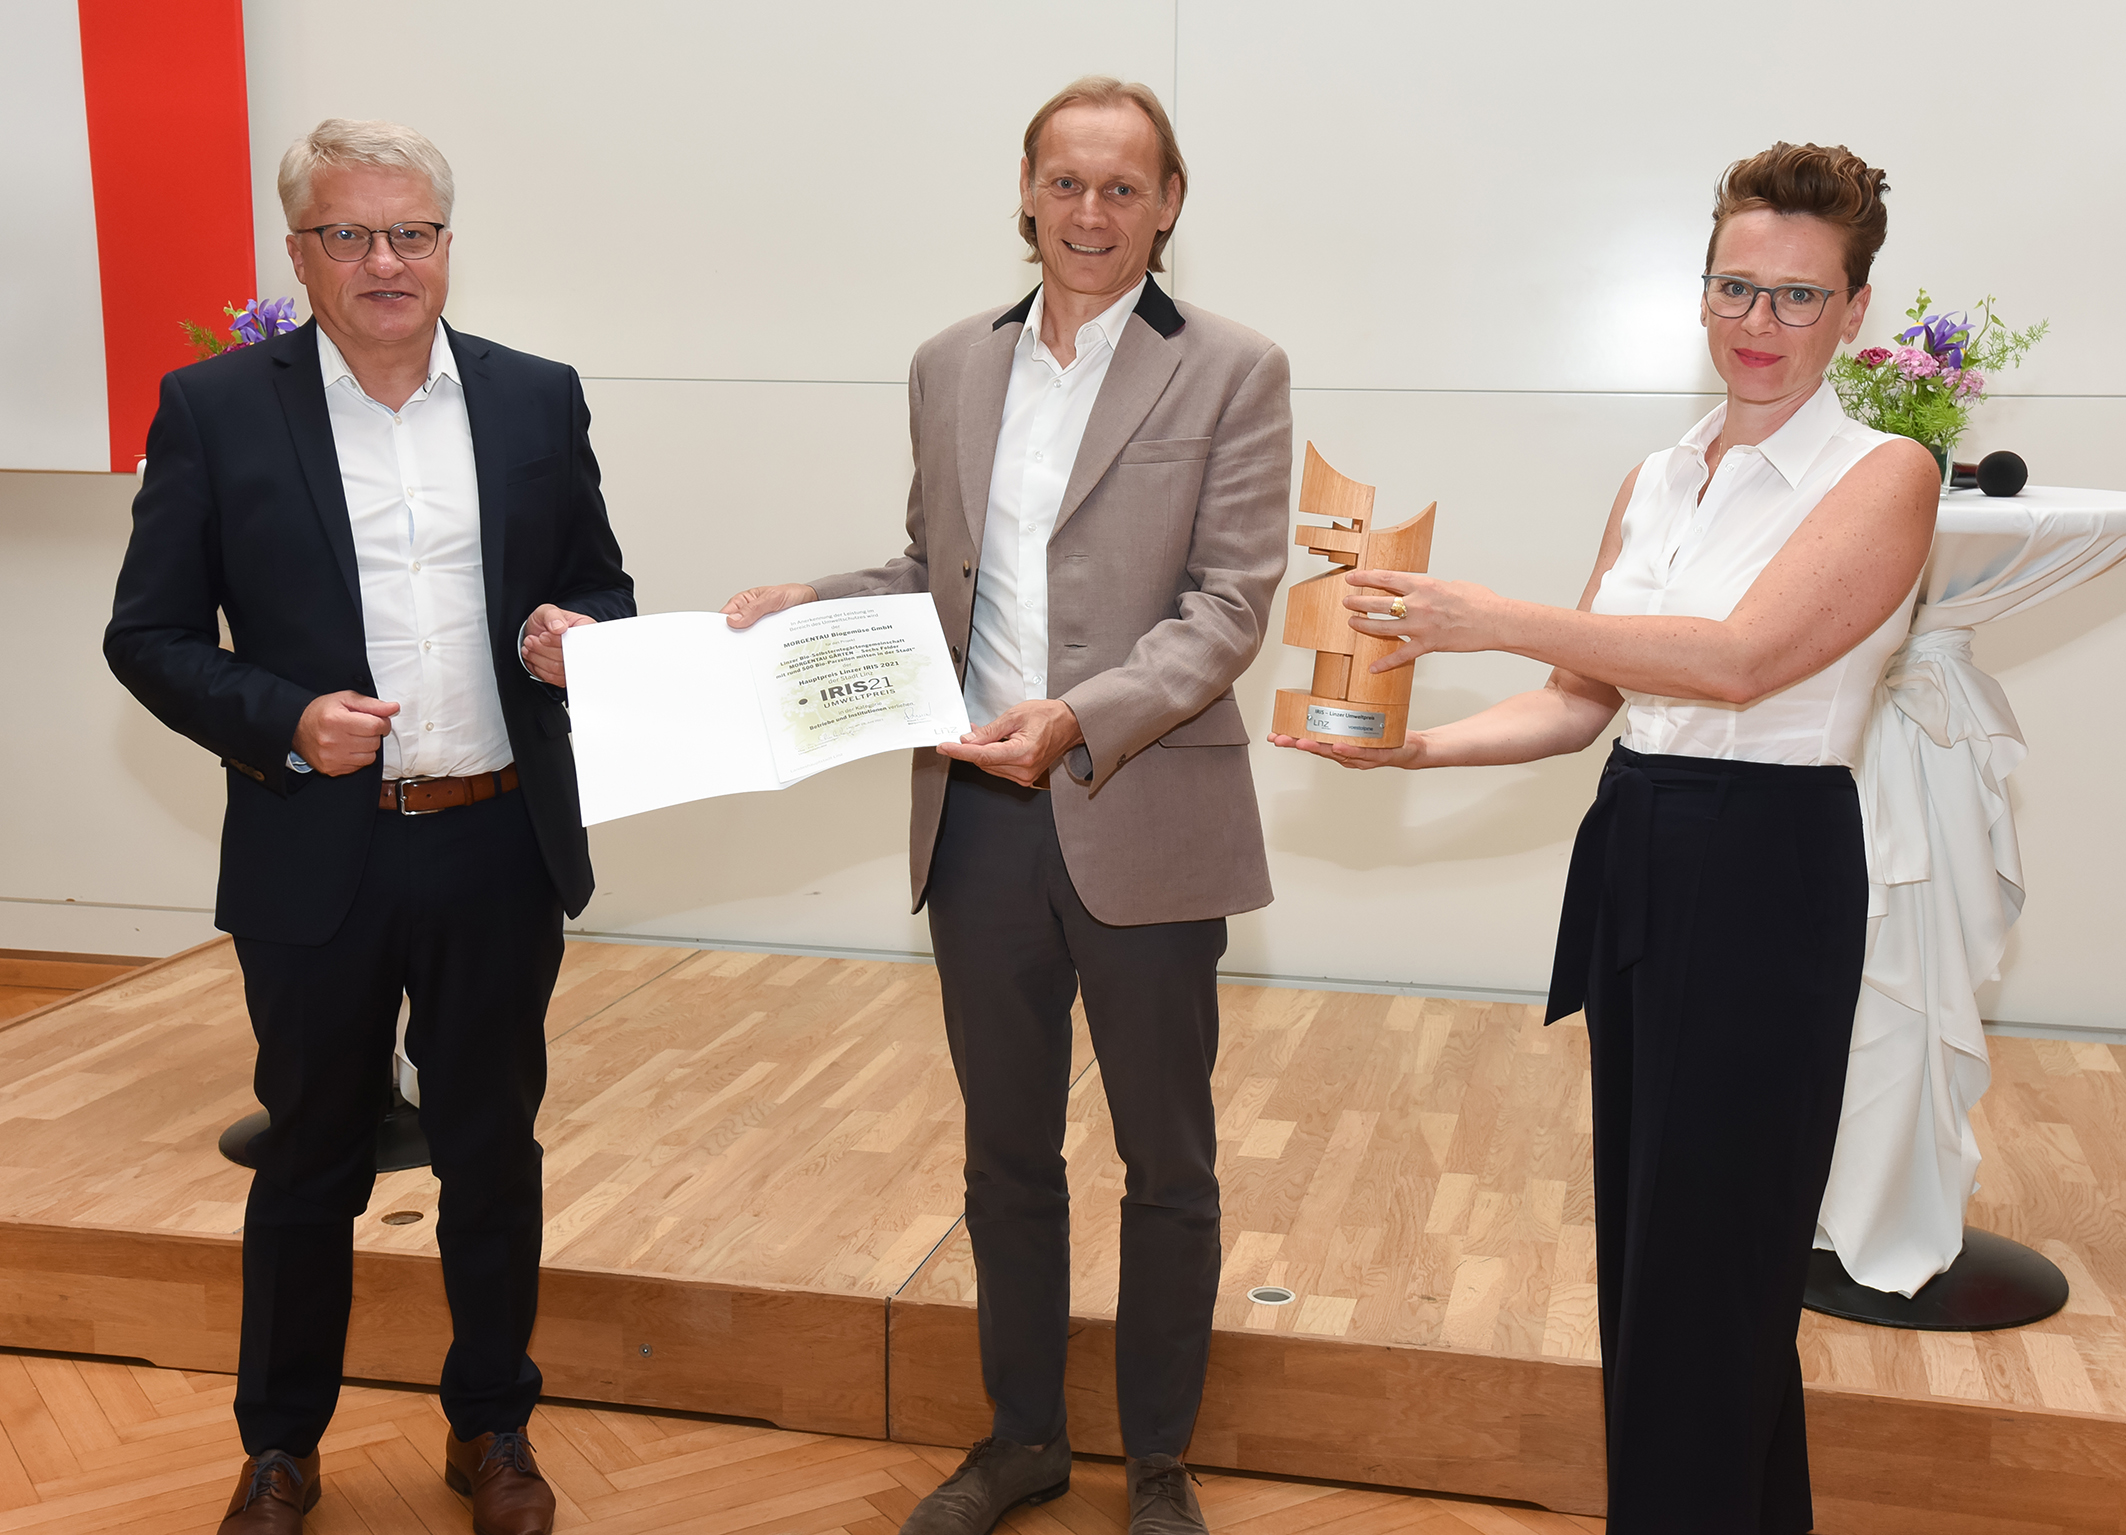 1. Platz bei der IRIS 2021 – Umweltpreis der Stadt Linz für unsere MORGENTAU GÄRTEN